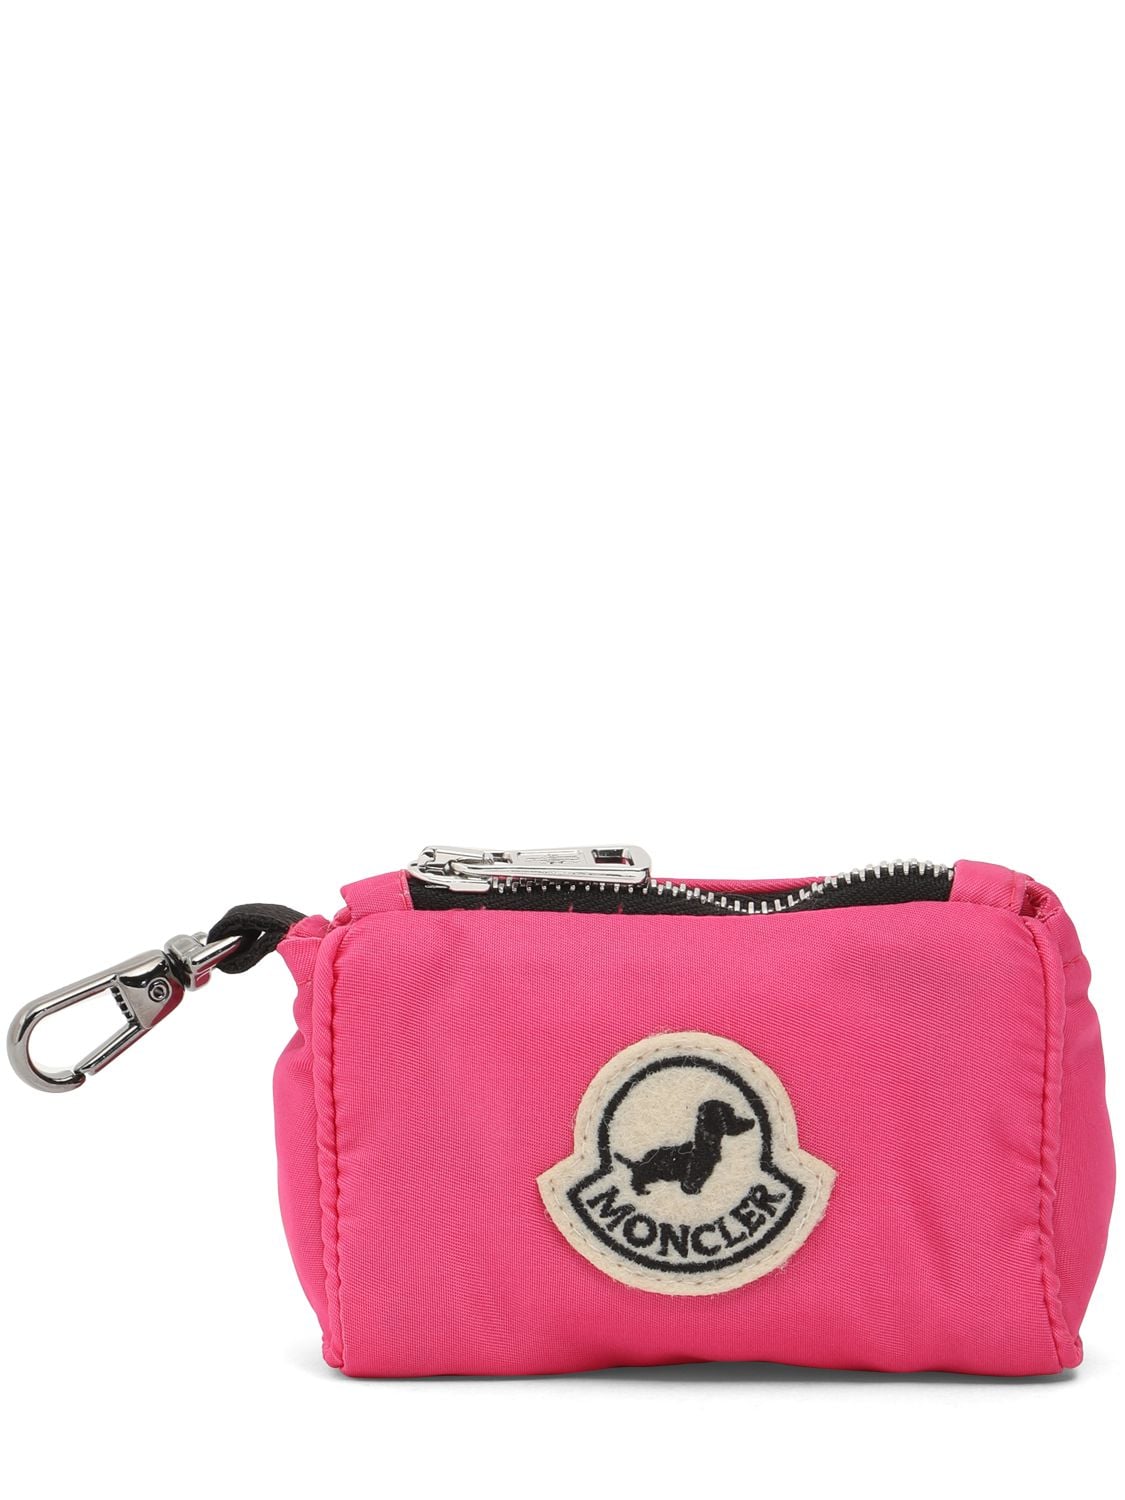 Moncler Genius Moncler X Poldo Satin Dog Bag Holder In Pink